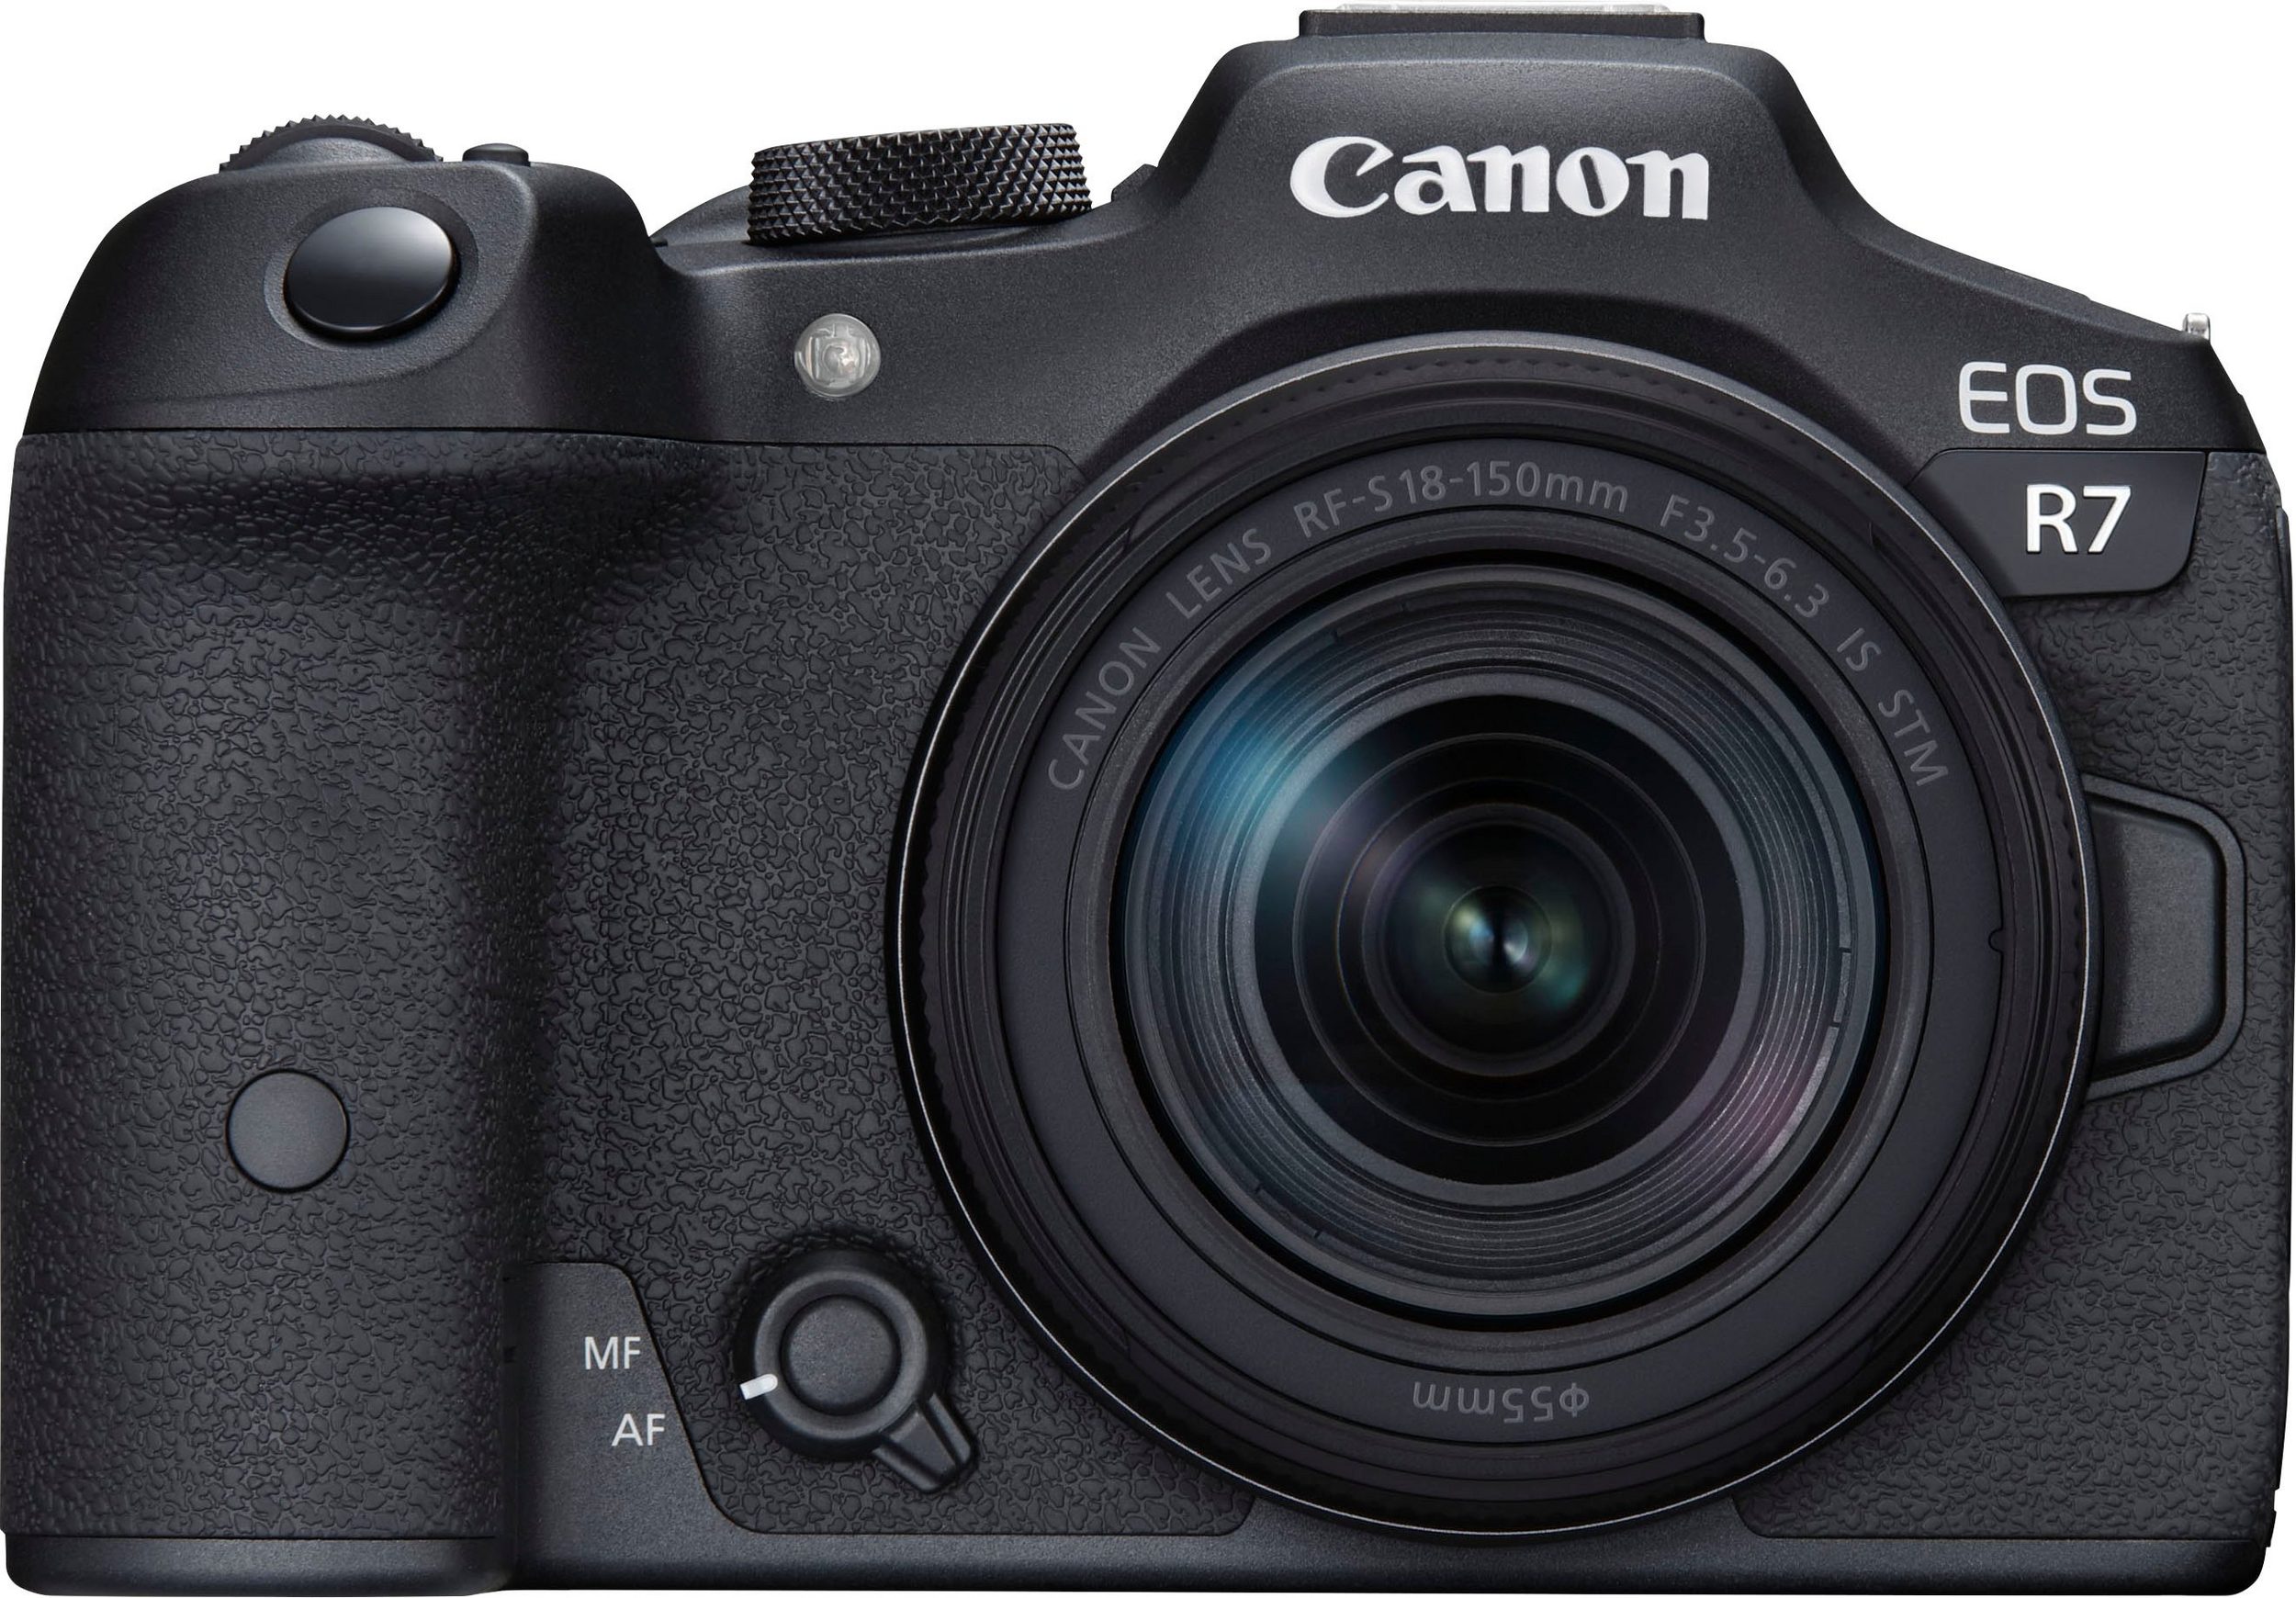 Canon Digitalkamera